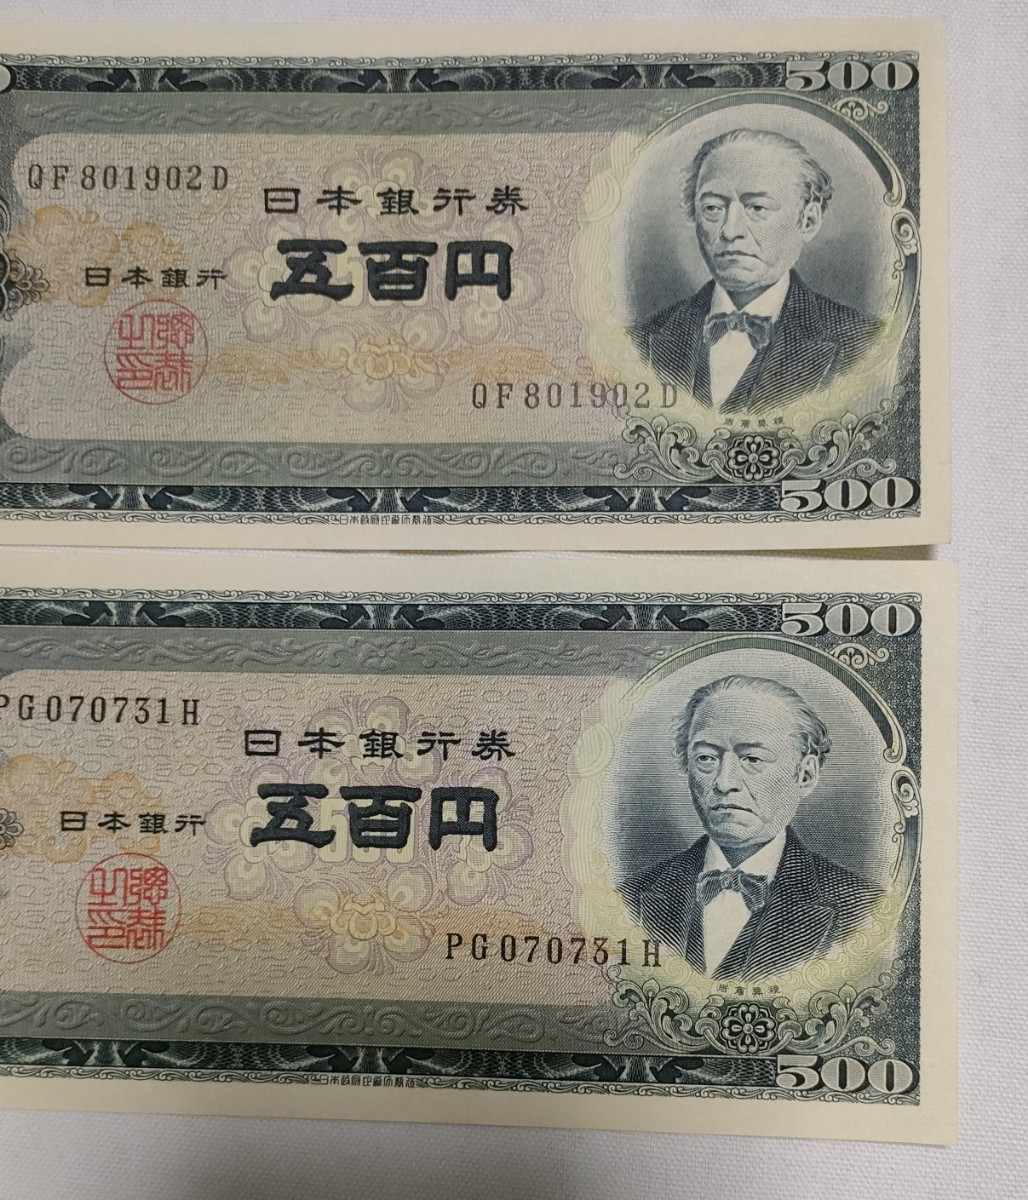 岩倉具視 旧500円札 2枚 ピン札 五百円札 B号券 旧紙幣 日本政府印刷局